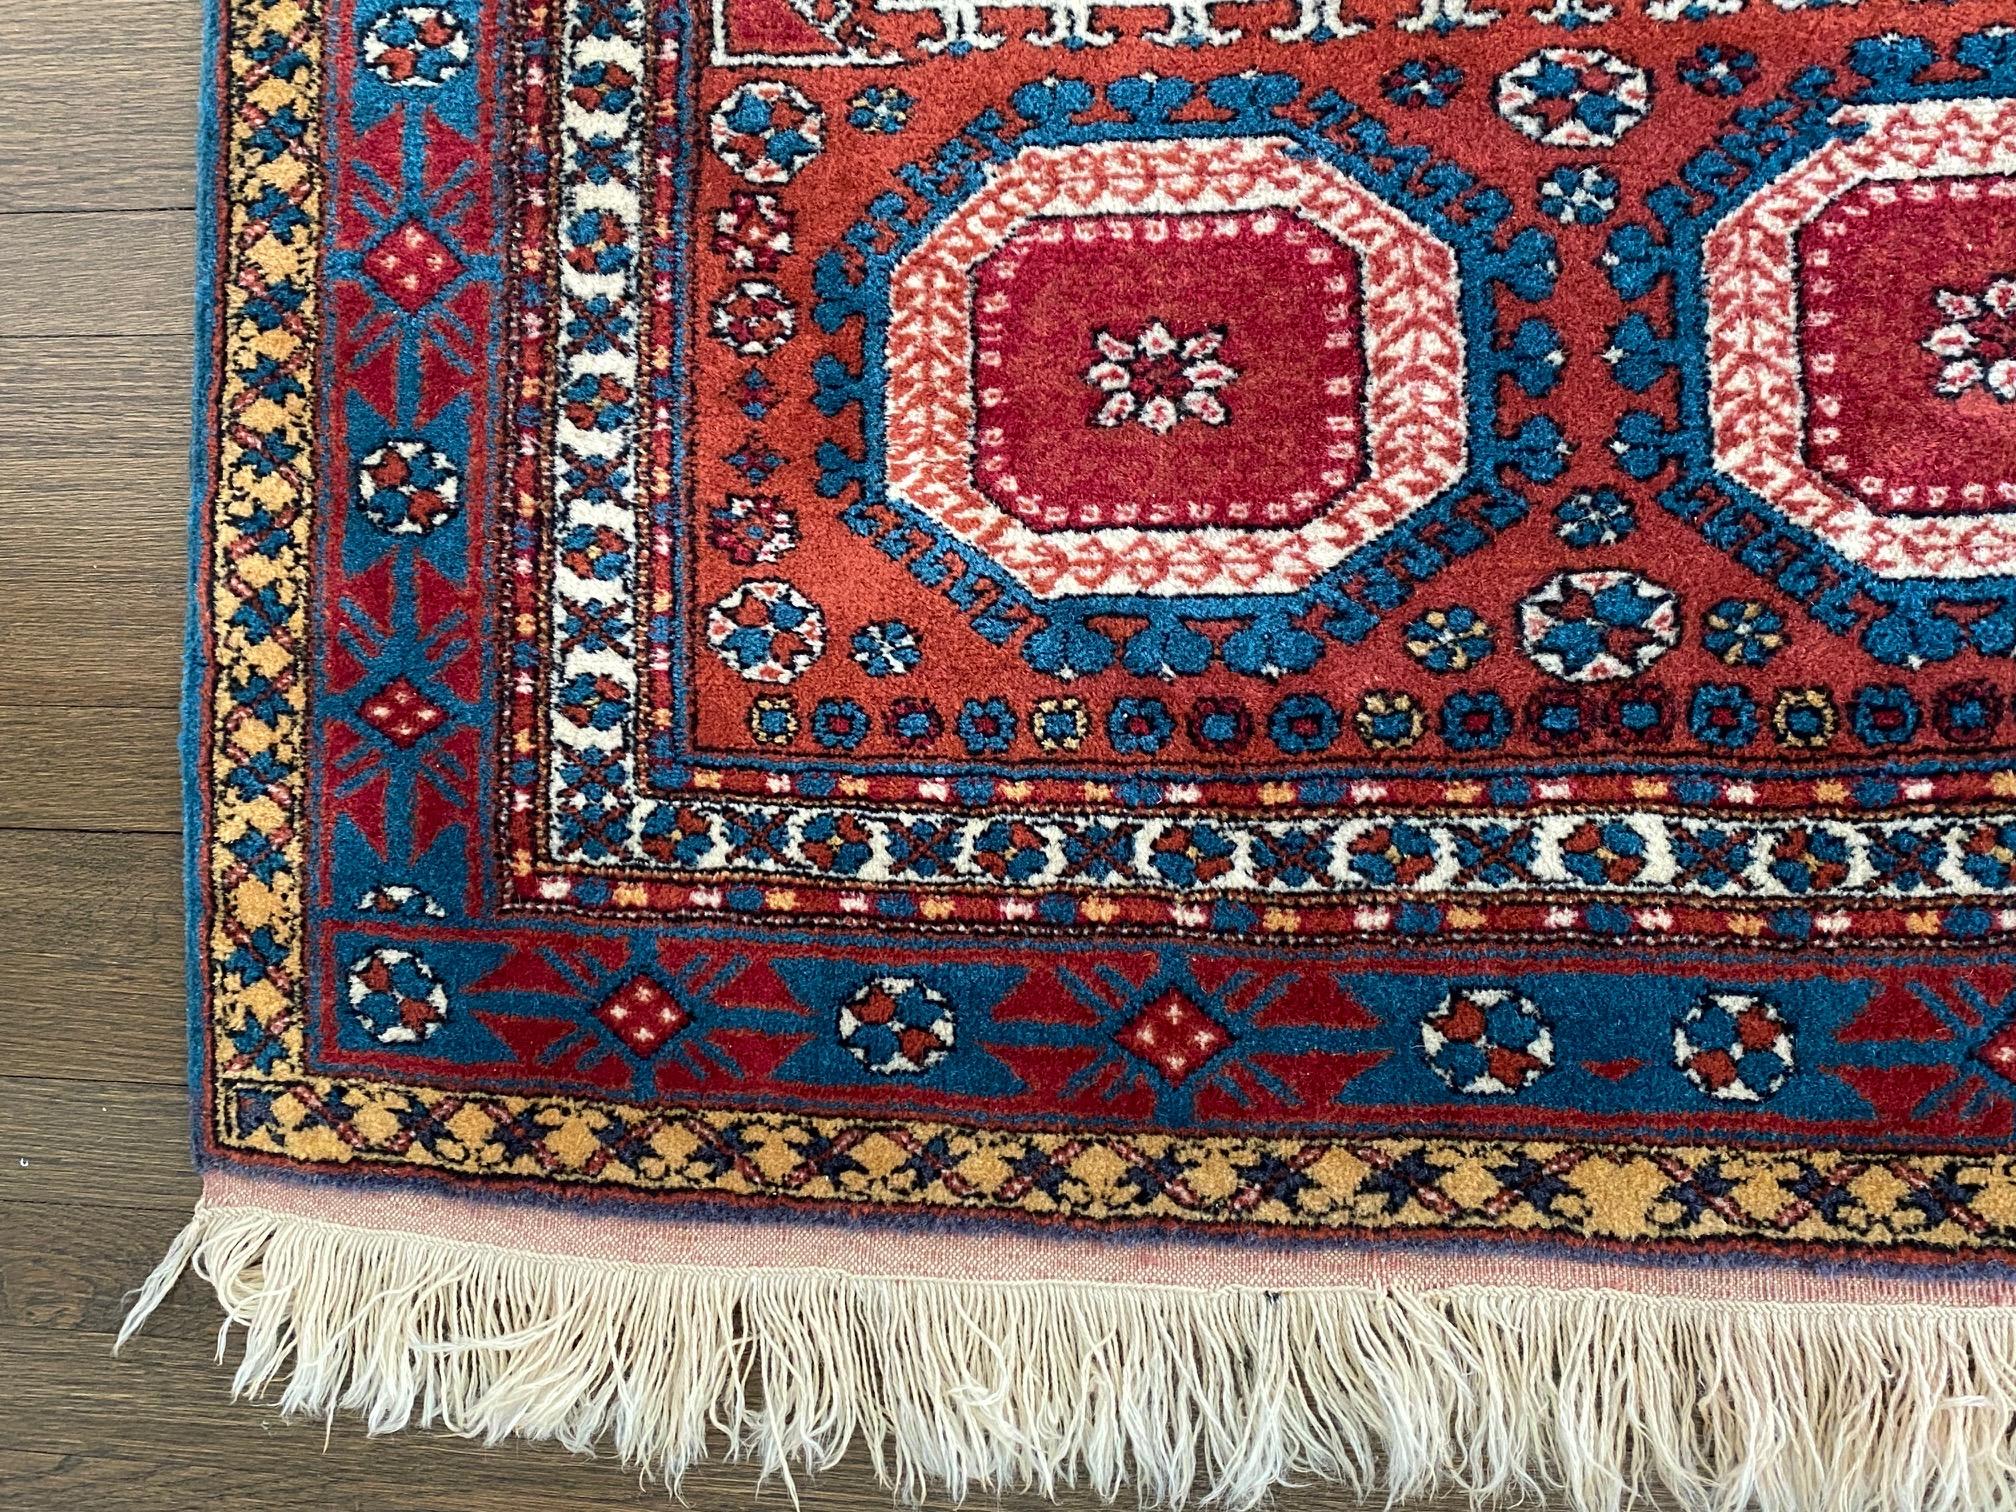 Schöner türkischer Teppich aus Holz in Juwelentönen mit geometrischem Muster in tiefem Rot, Blau und Weiß.

(Patten)